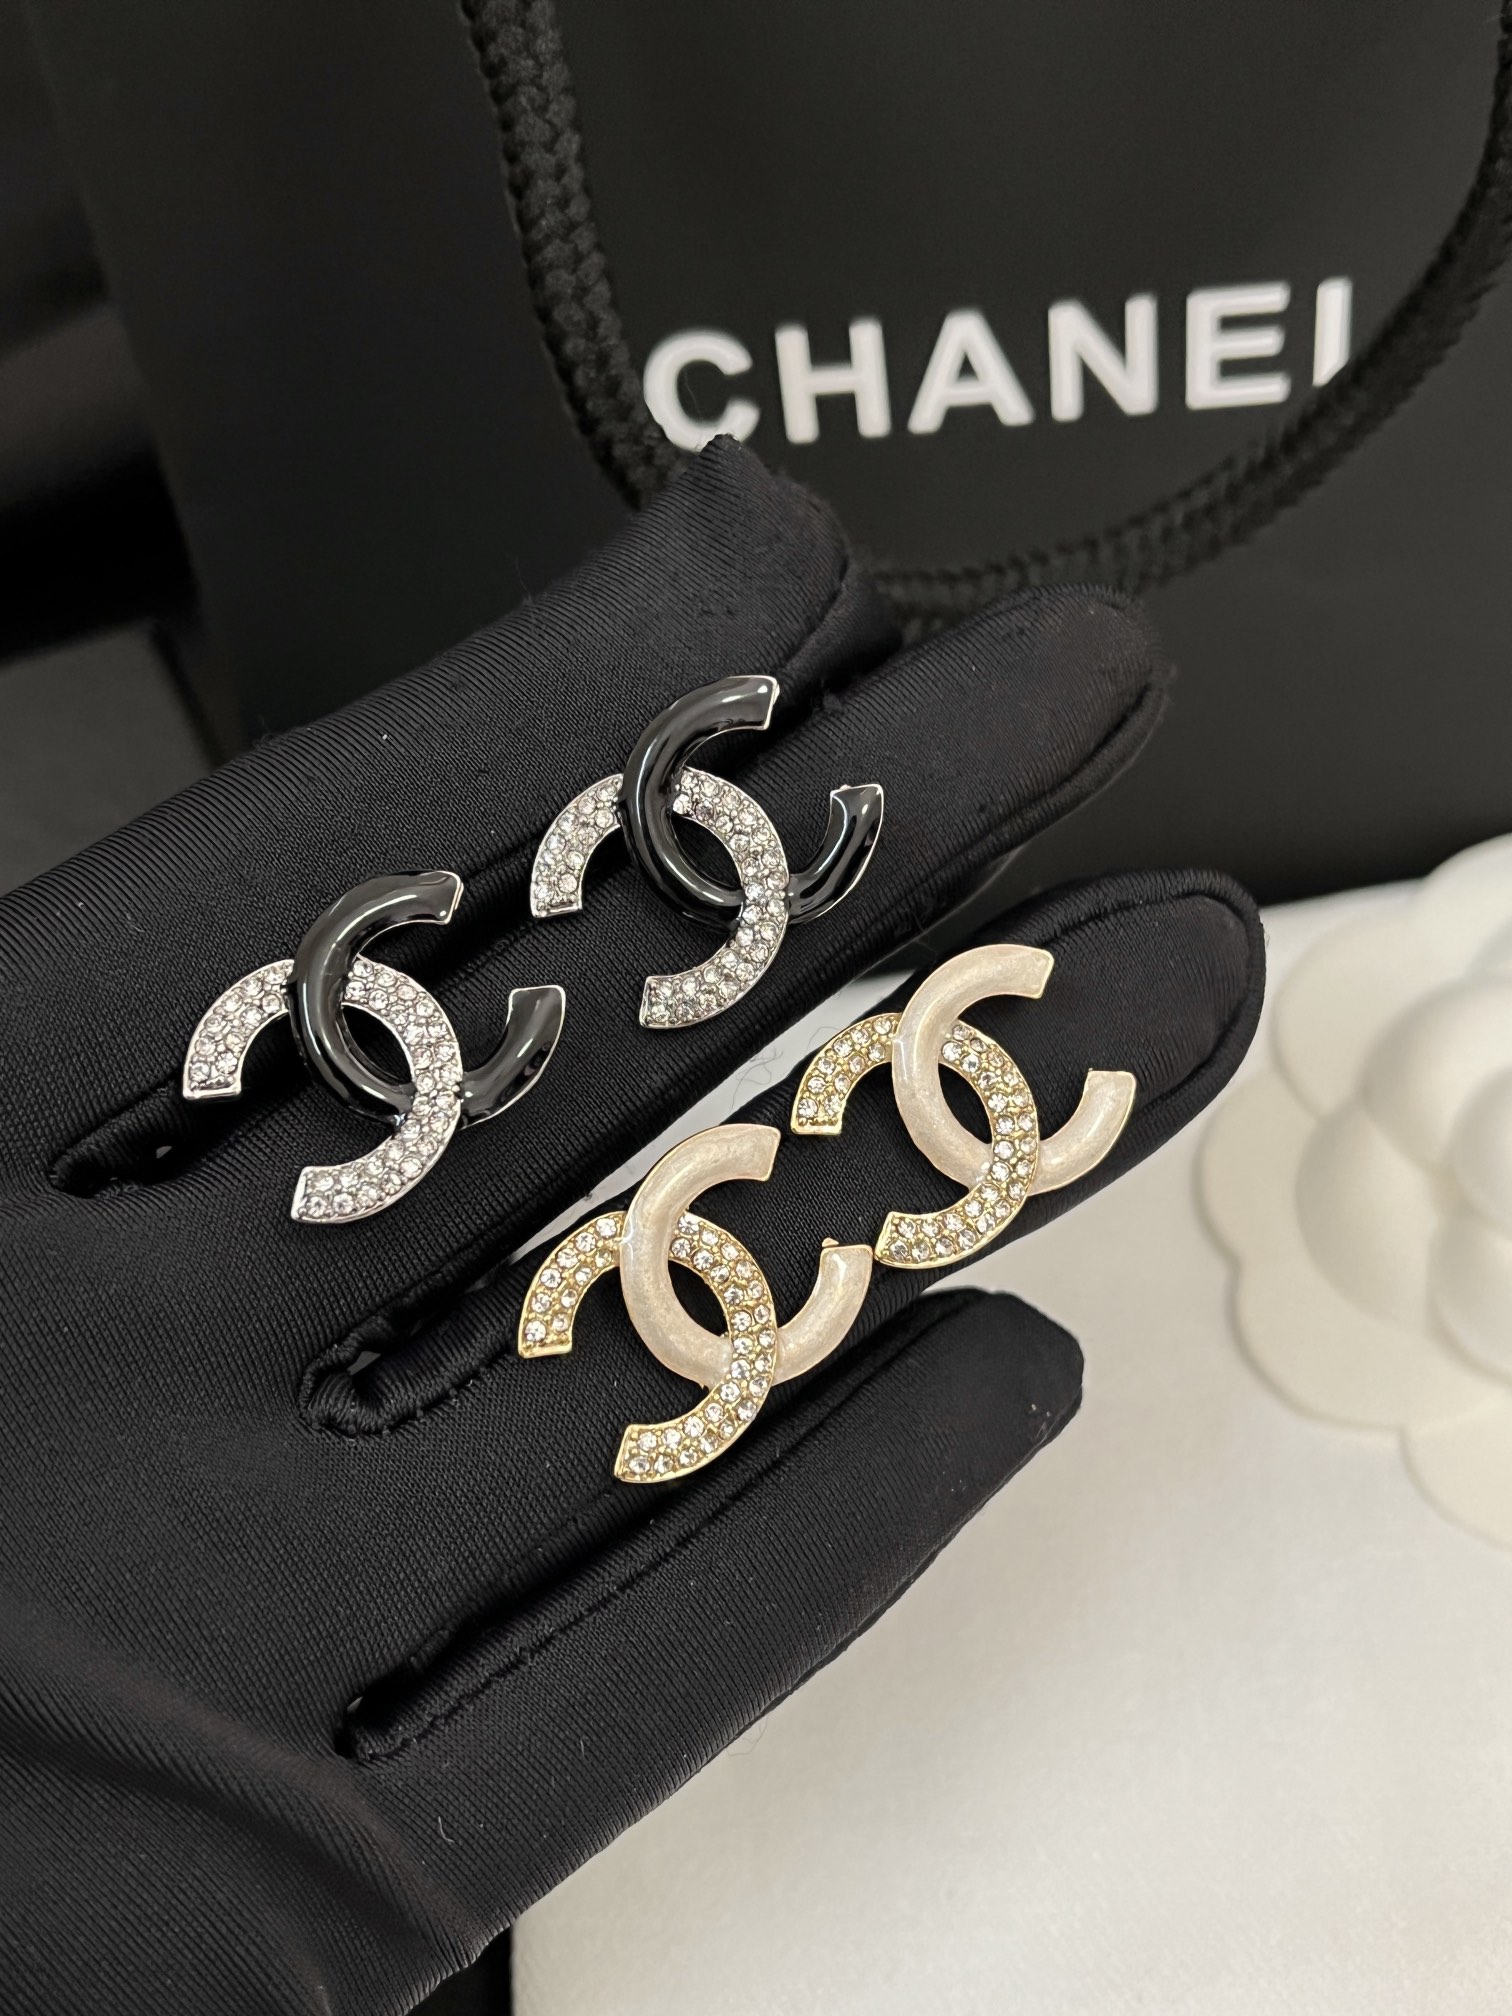 A950 Chanel earrings cc